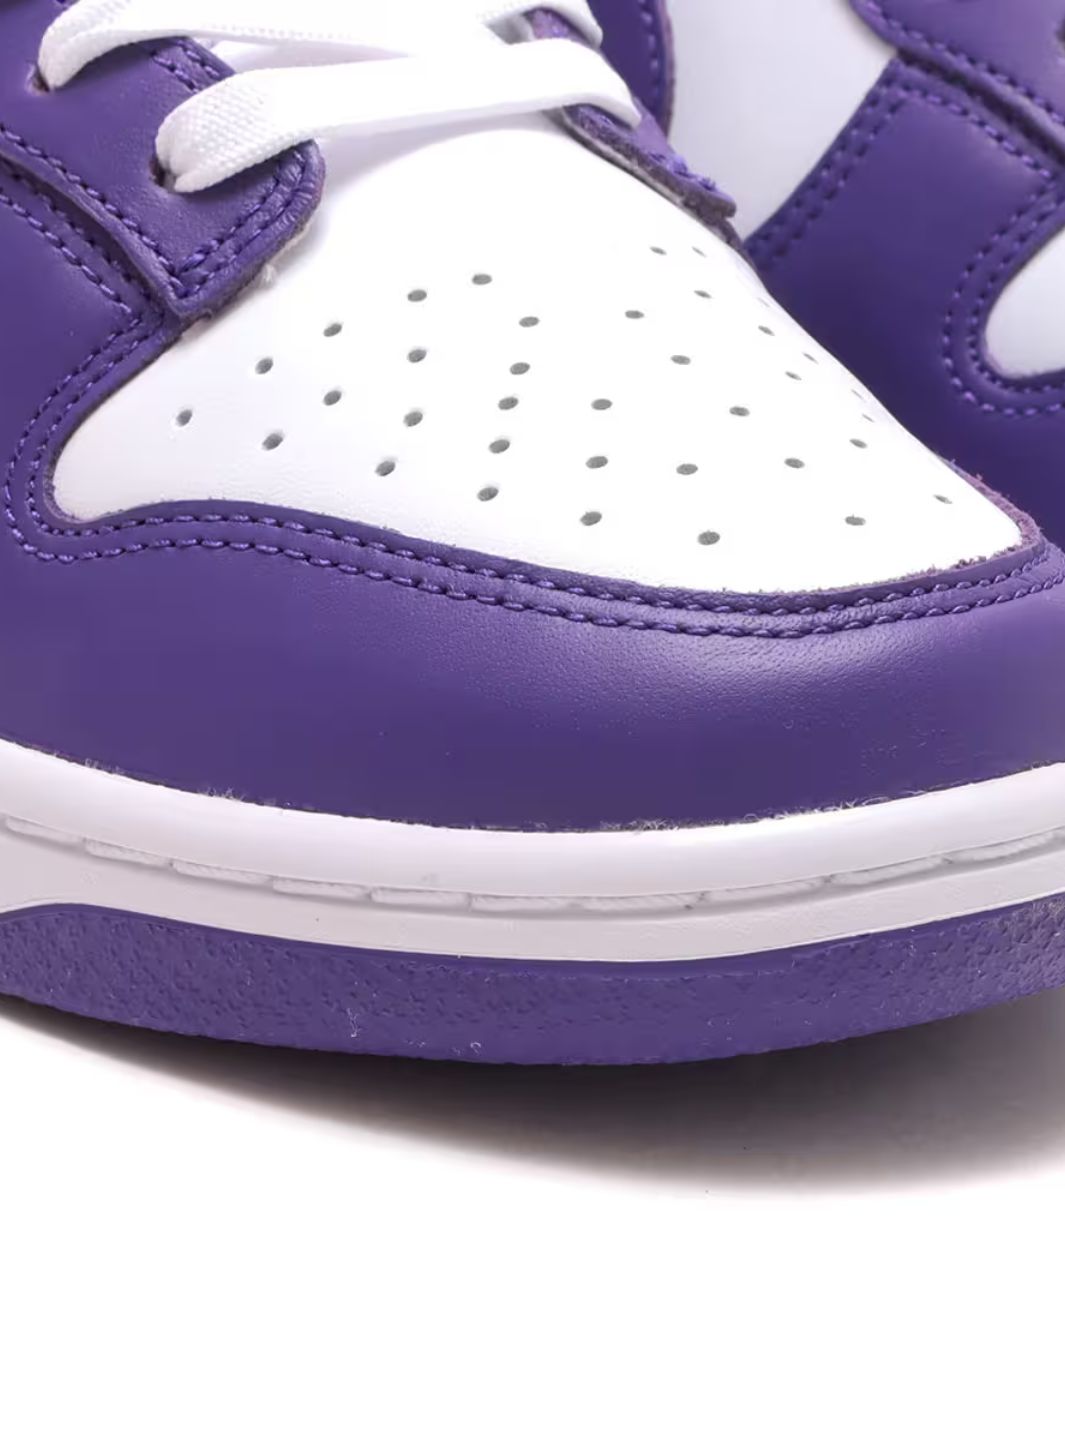 Nike Dunk Low Purple